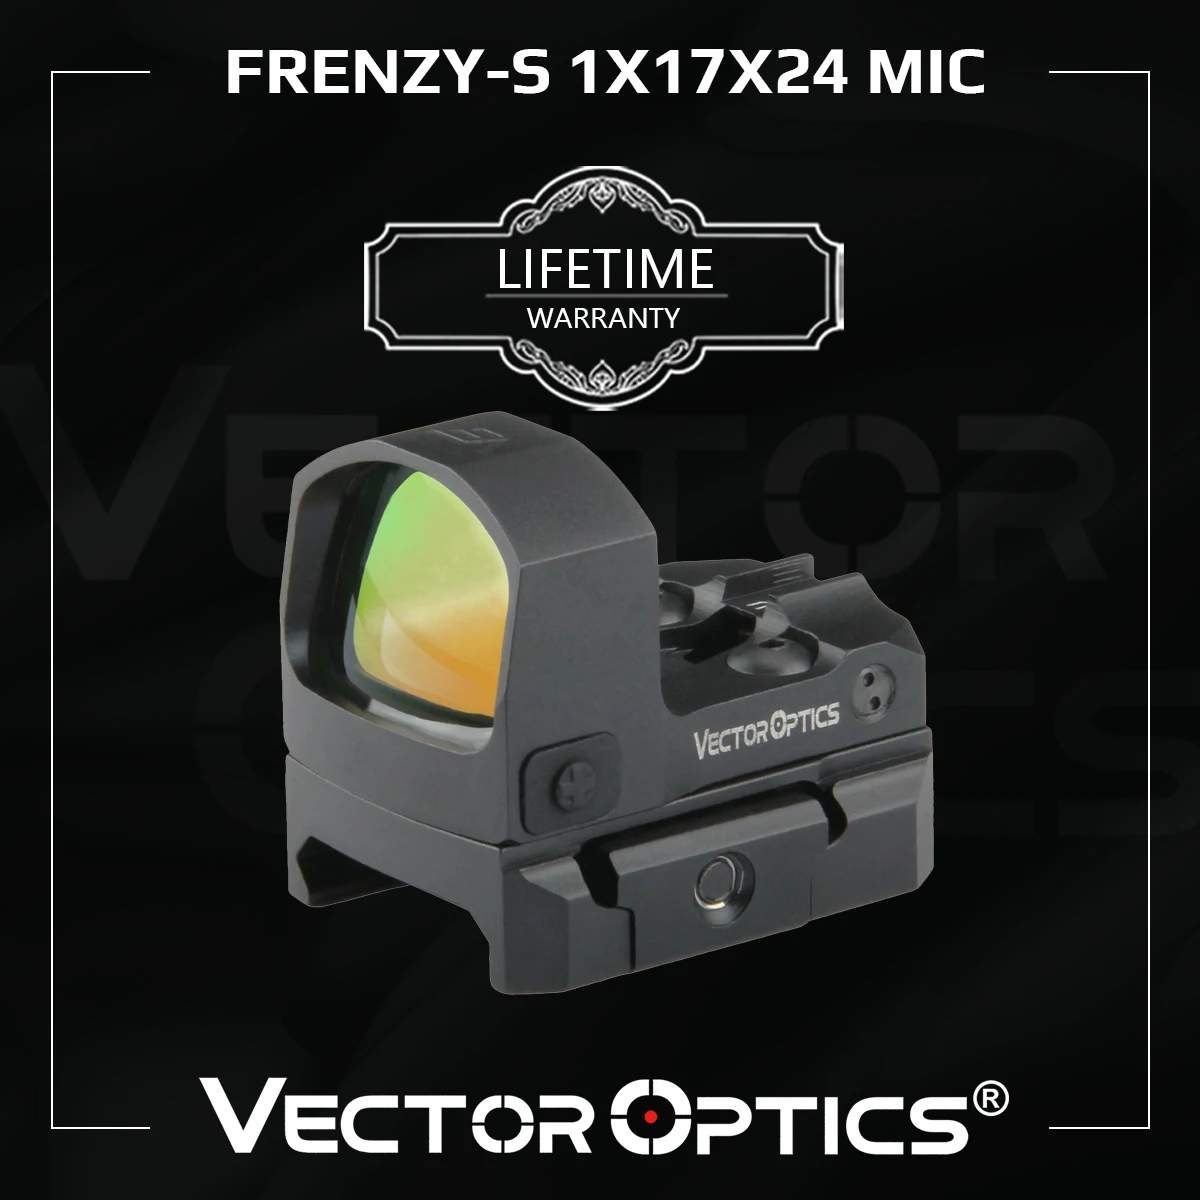 Векторная оптика Frenzy-S 1x17x24 MOS 3MOA в Красную точку, Самый Легкий Цельнометаллический Прицел для пистолета, Пожизненная гарантия 9 мм. 223